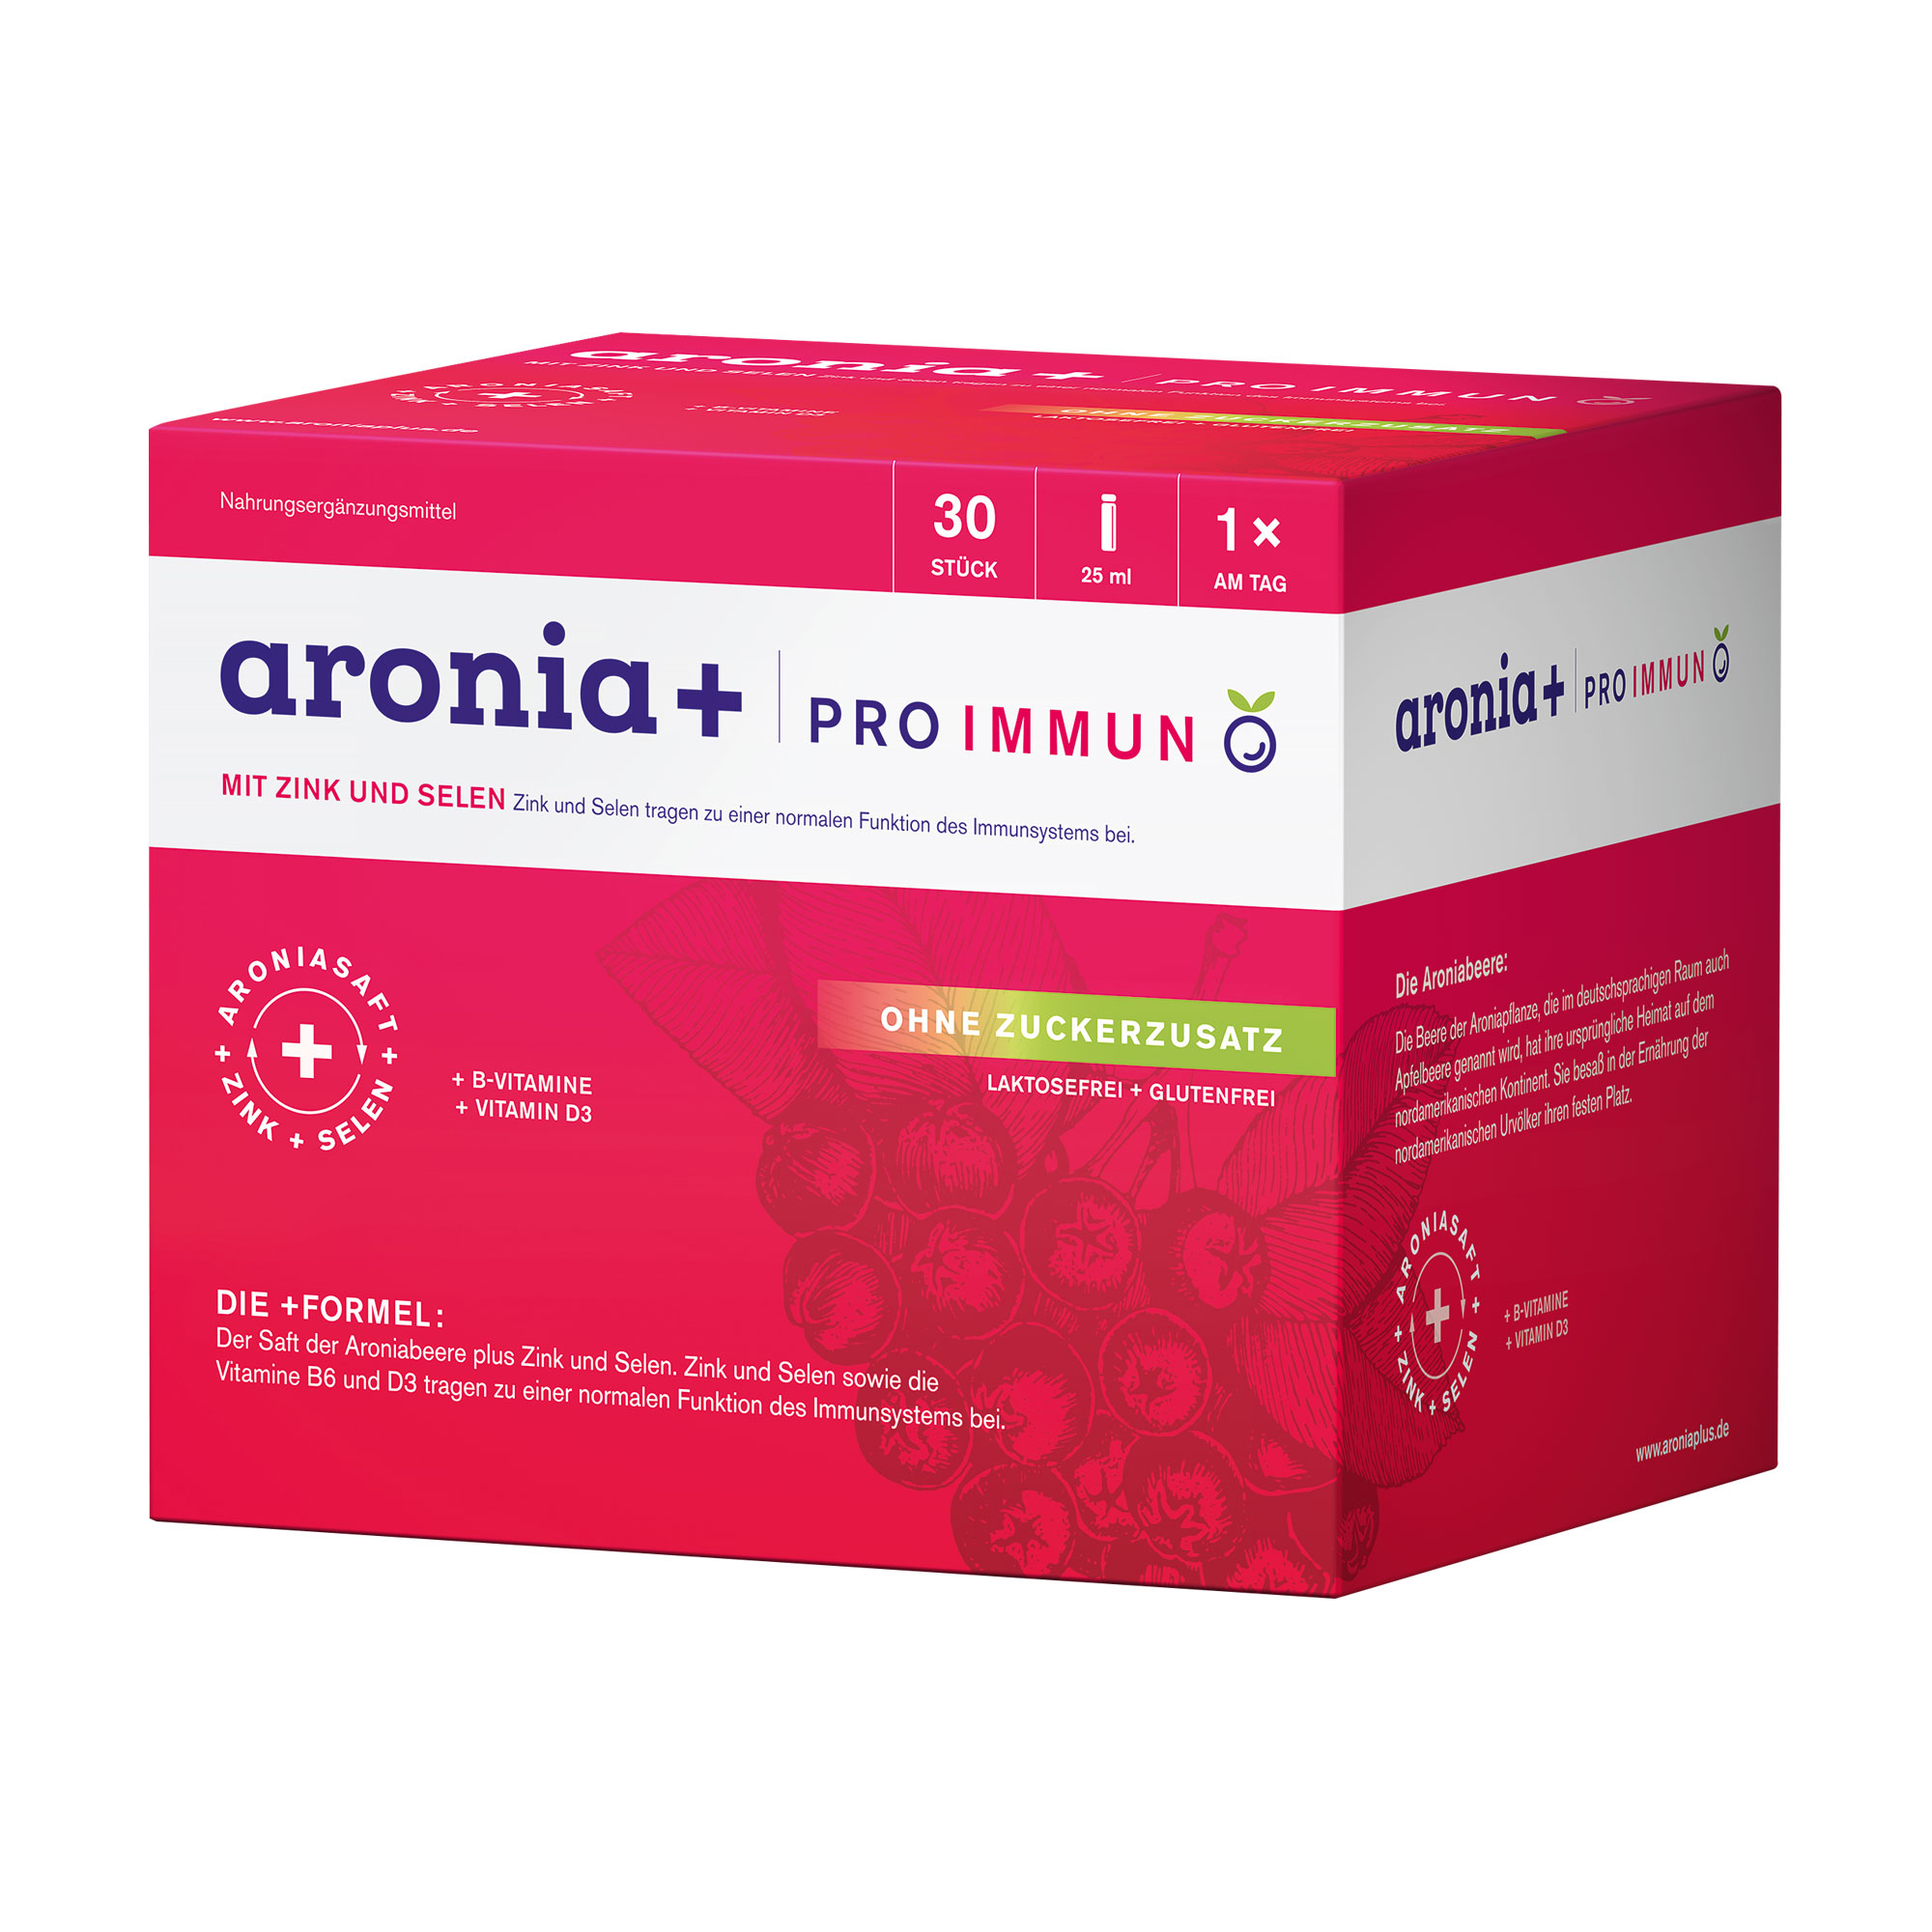 Nahrungsergänzungsmittel mit Aronia, Zink und Selen sowie ausgewählten B-Vitaminen und Vitamin D3. Für Erwachsene.